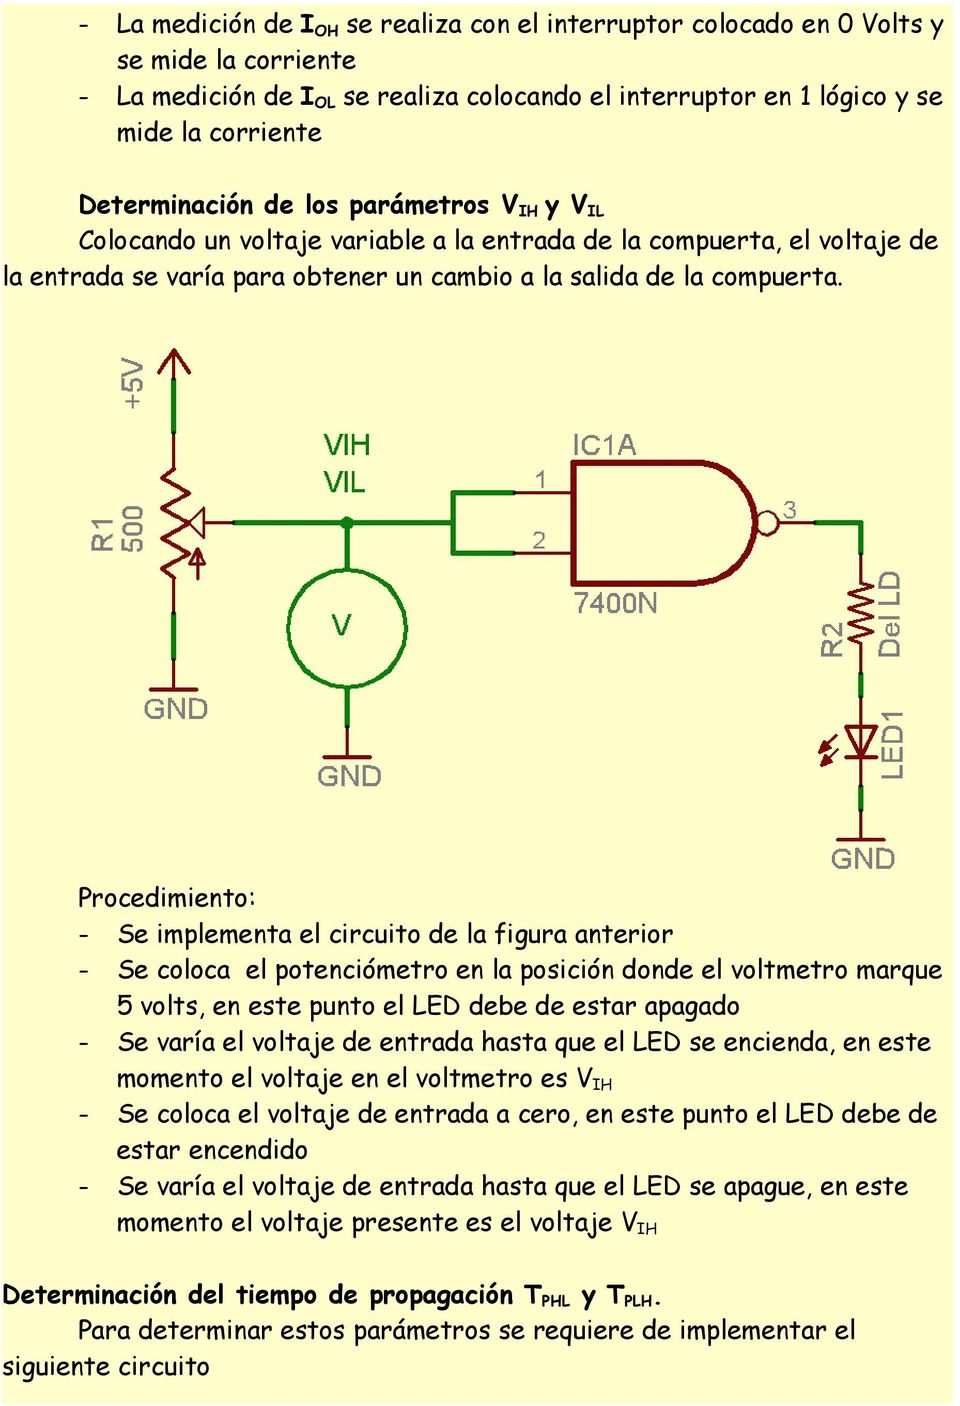 Procedimiento: - Se implementa el circuito de la figura anterior - Se coloca el potenciómetro en la posición donde el voltmetro marque 5 volts, en este punto el LED debe de estar apagado - Se varía